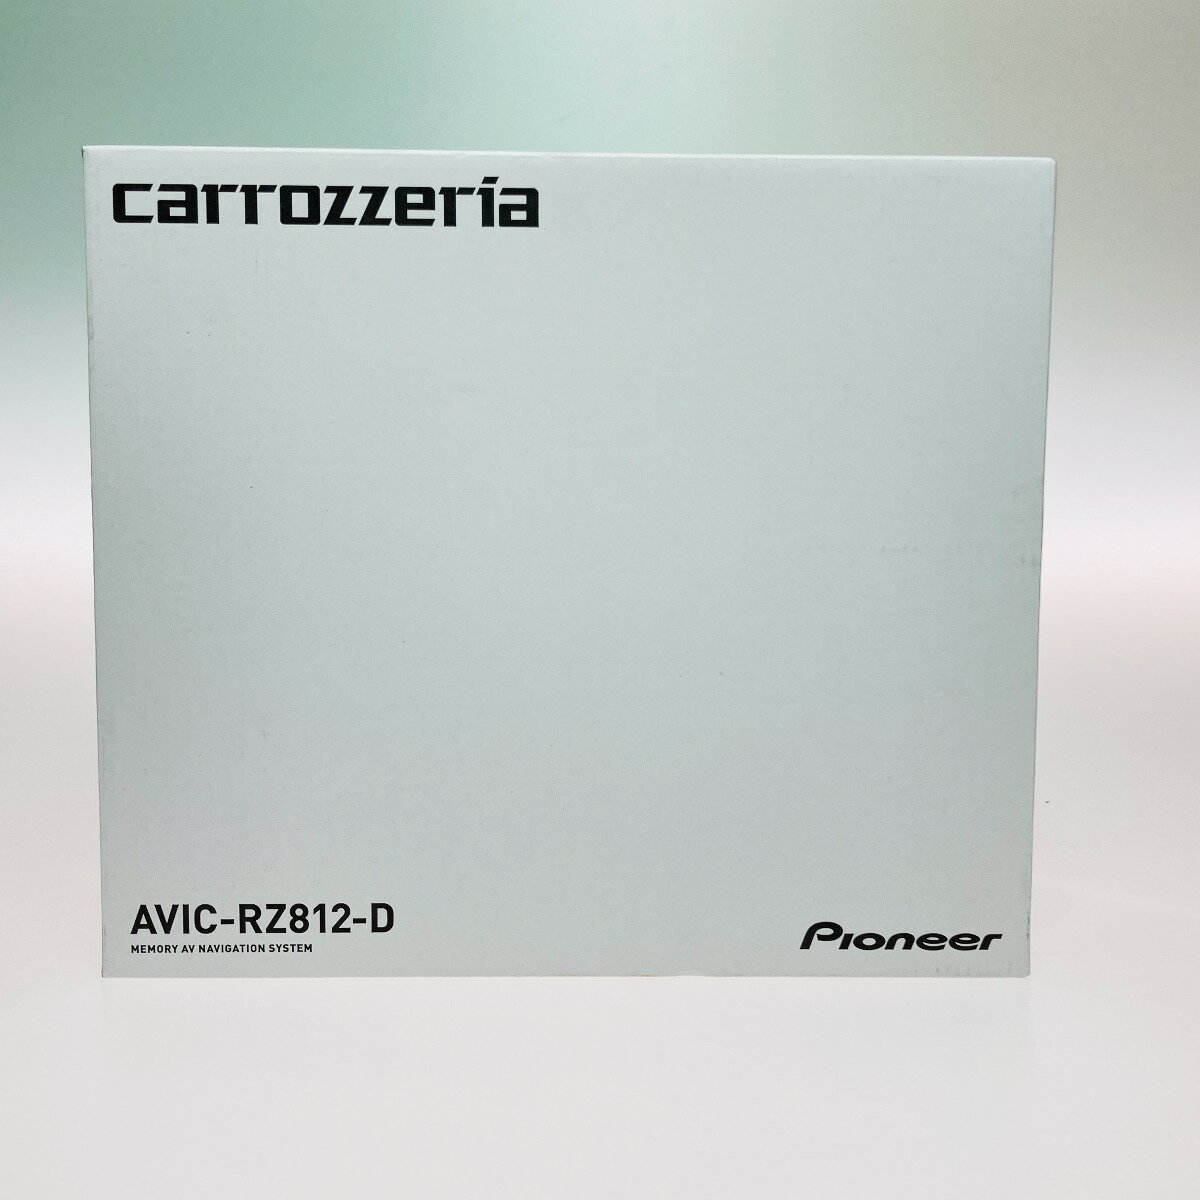 ◎◎【中古】Pioneer パイオニア carrozzeria カロッツェリア 楽ナビ メモリーナビ AVIC-RZ812-D カーナビ 649 Sランク